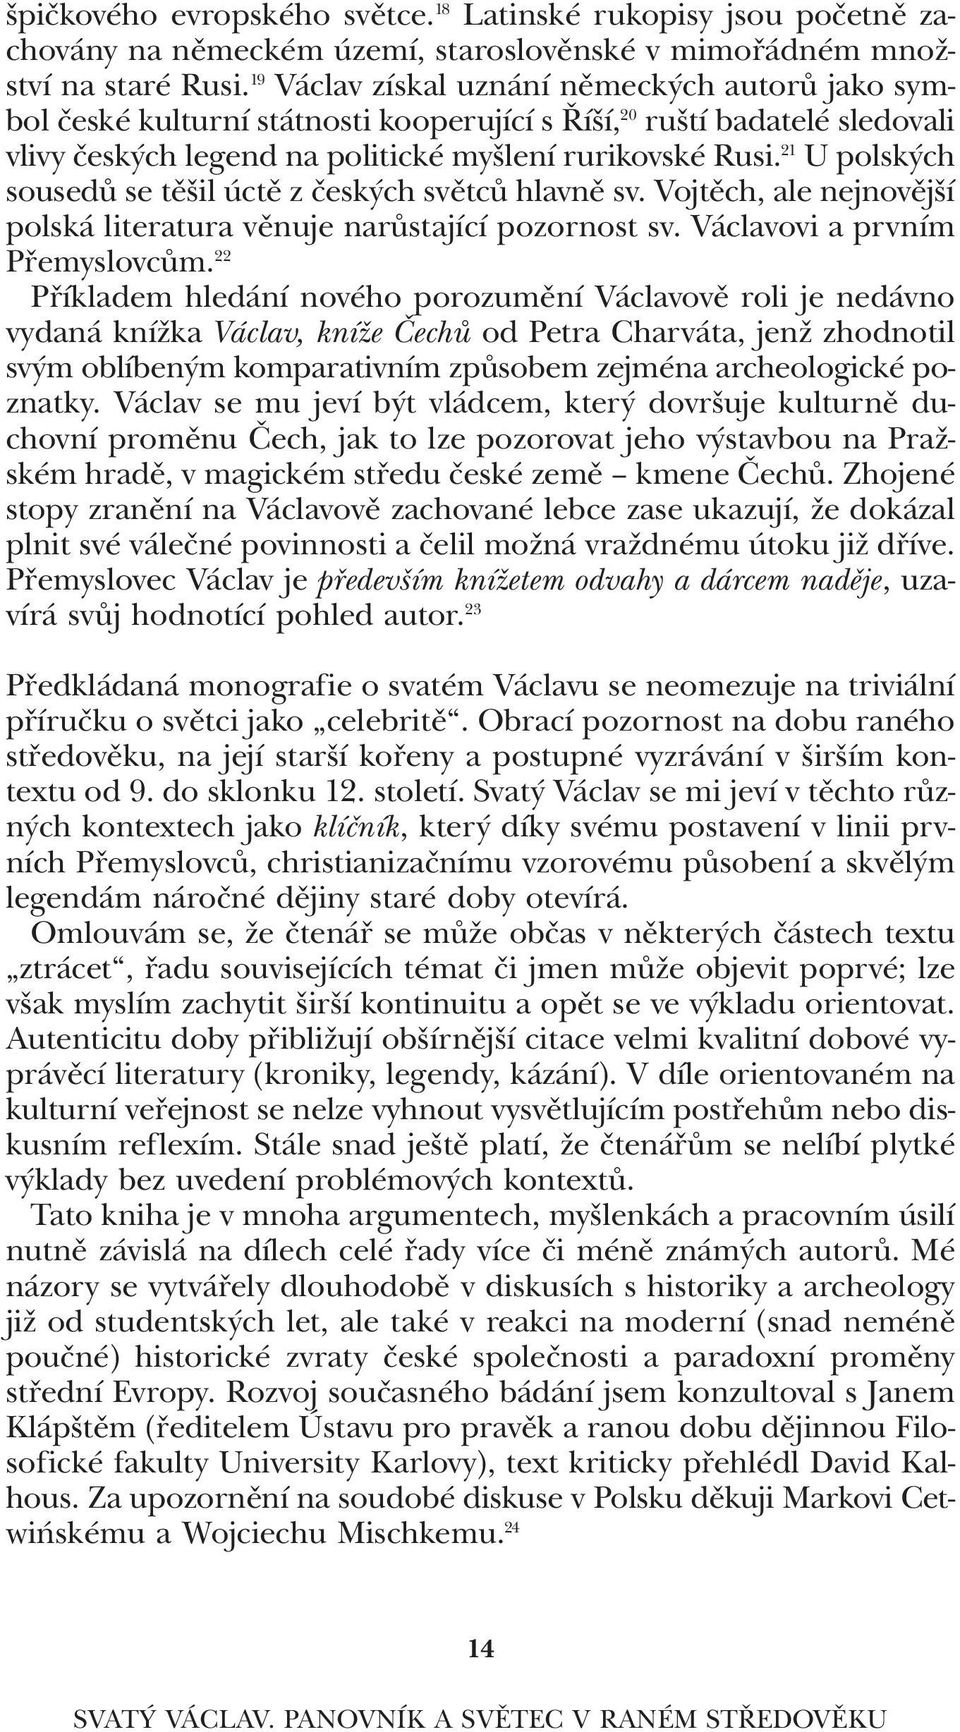 21 U polských sousedů se těšil úctě z českých světců hlavně sv. Vojtěch, ale nejnovější polská literatura věnuje narůstající pozornost sv. Václavovi a prvním přemyslovcům.